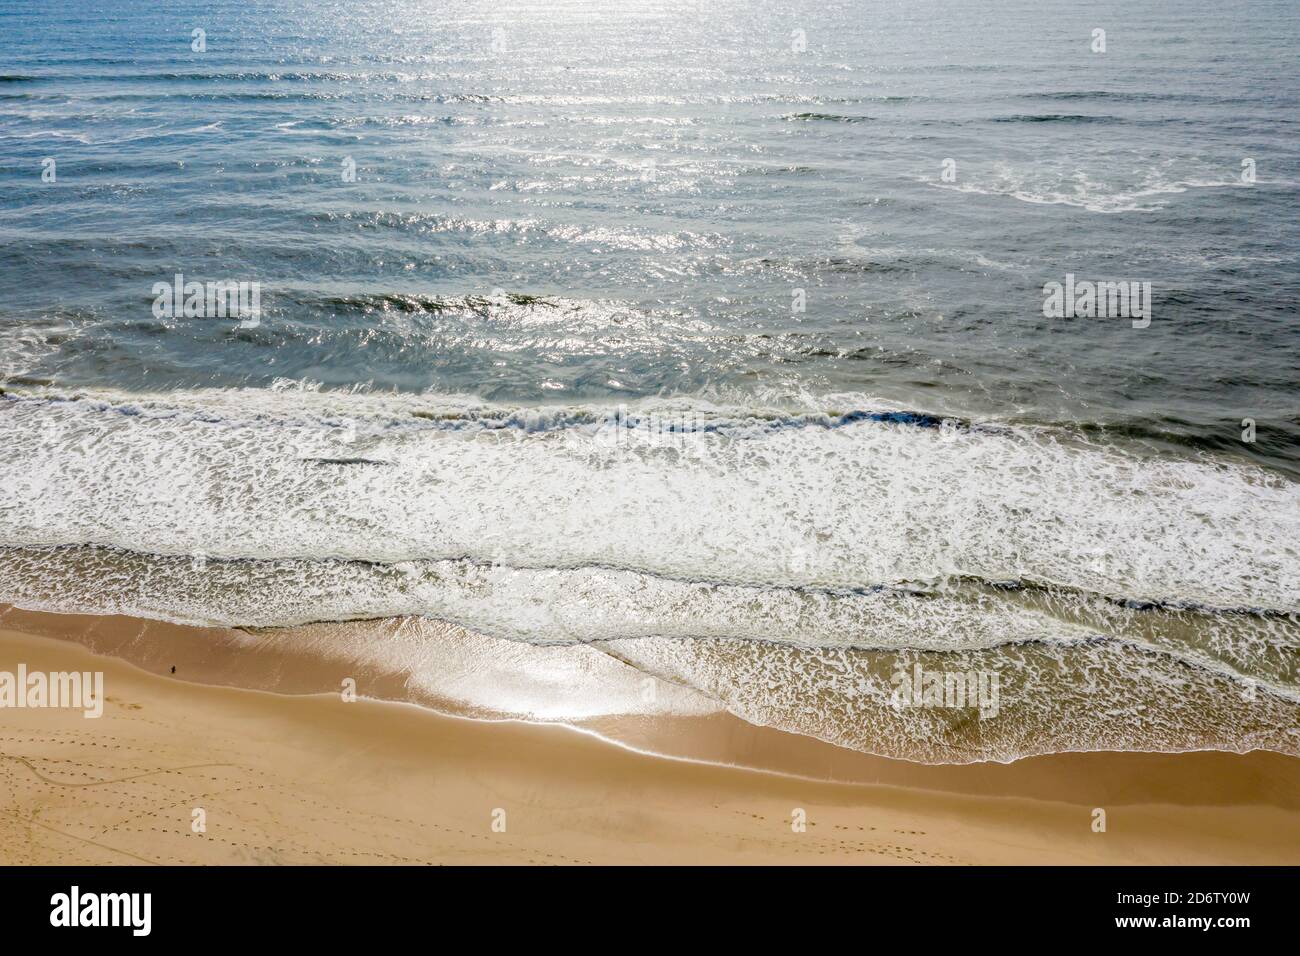 Immagine aerea di Amagansett e della spiaggia dell'oceano Foto Stock